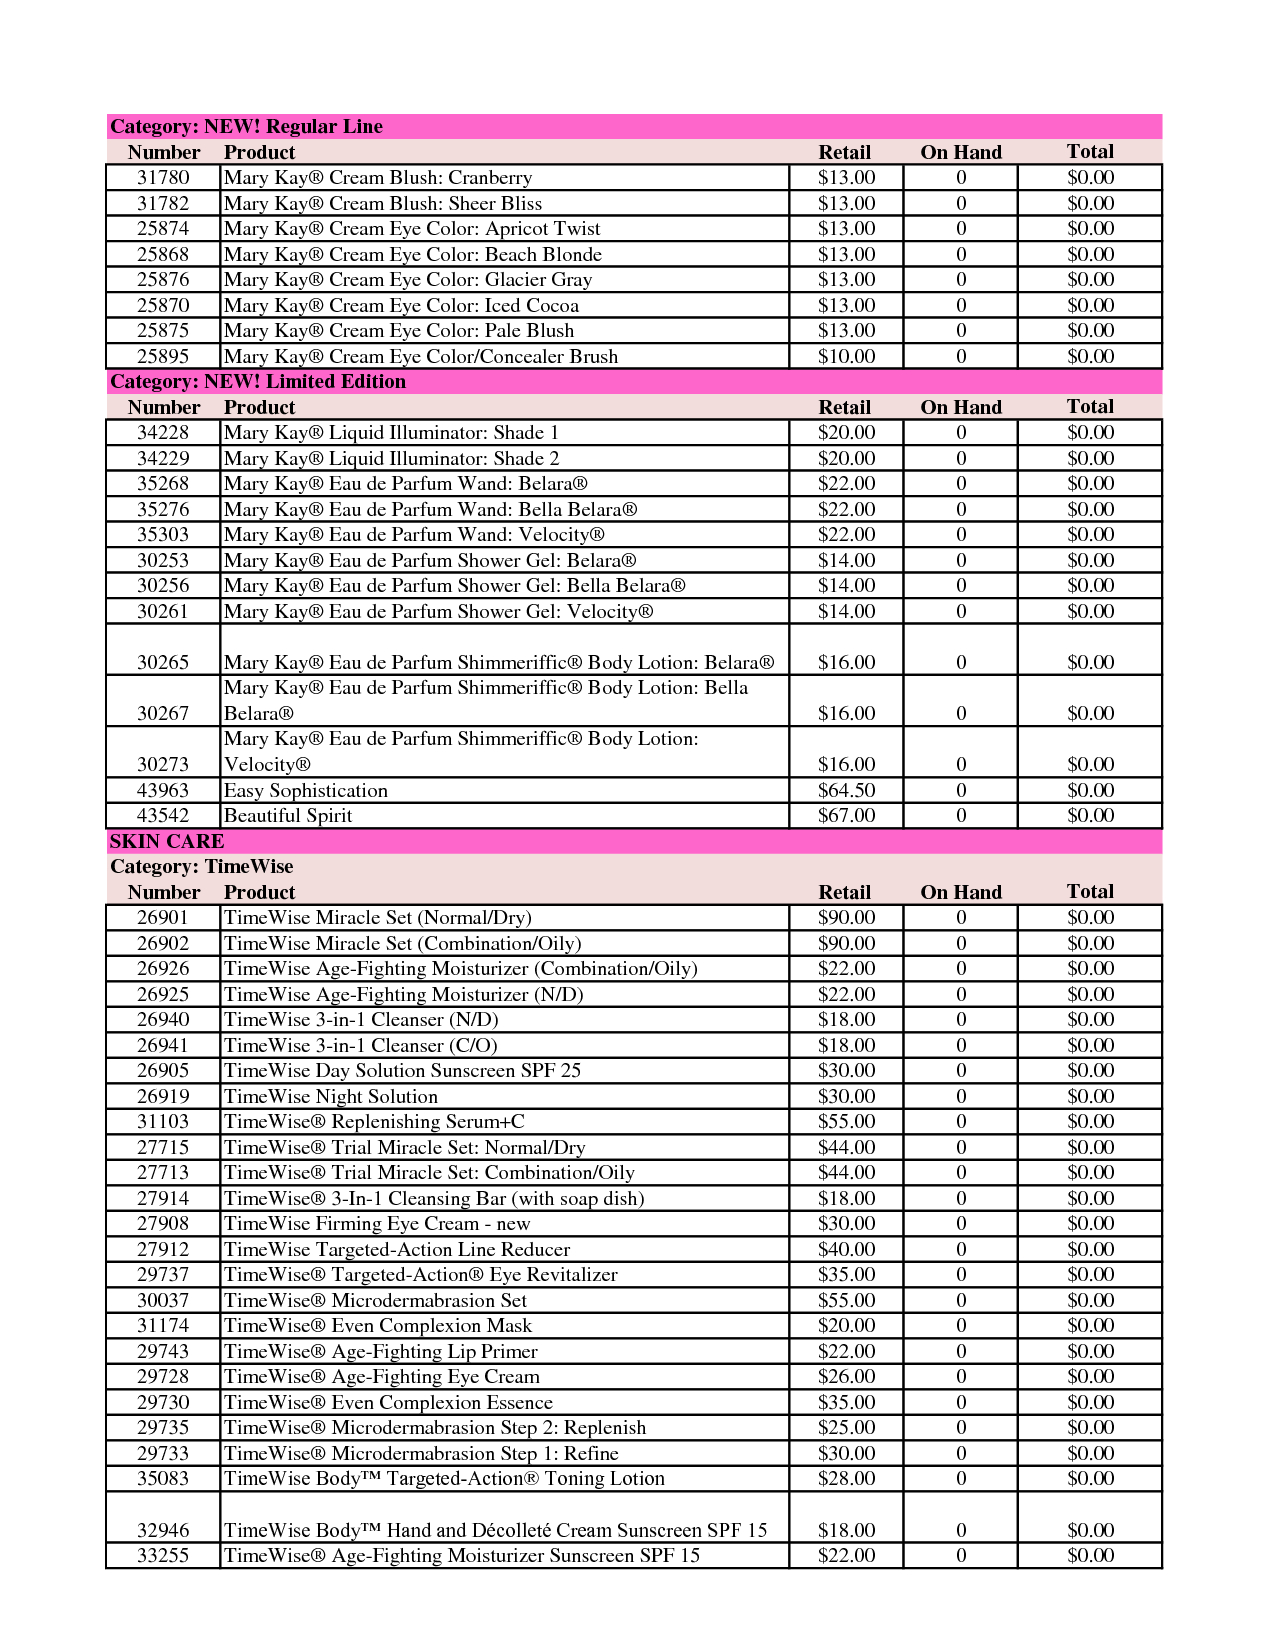 Mary Kay Inventory Sheet | Newatvs.info Within Mary Kay Inventory Spreadsheet 2018